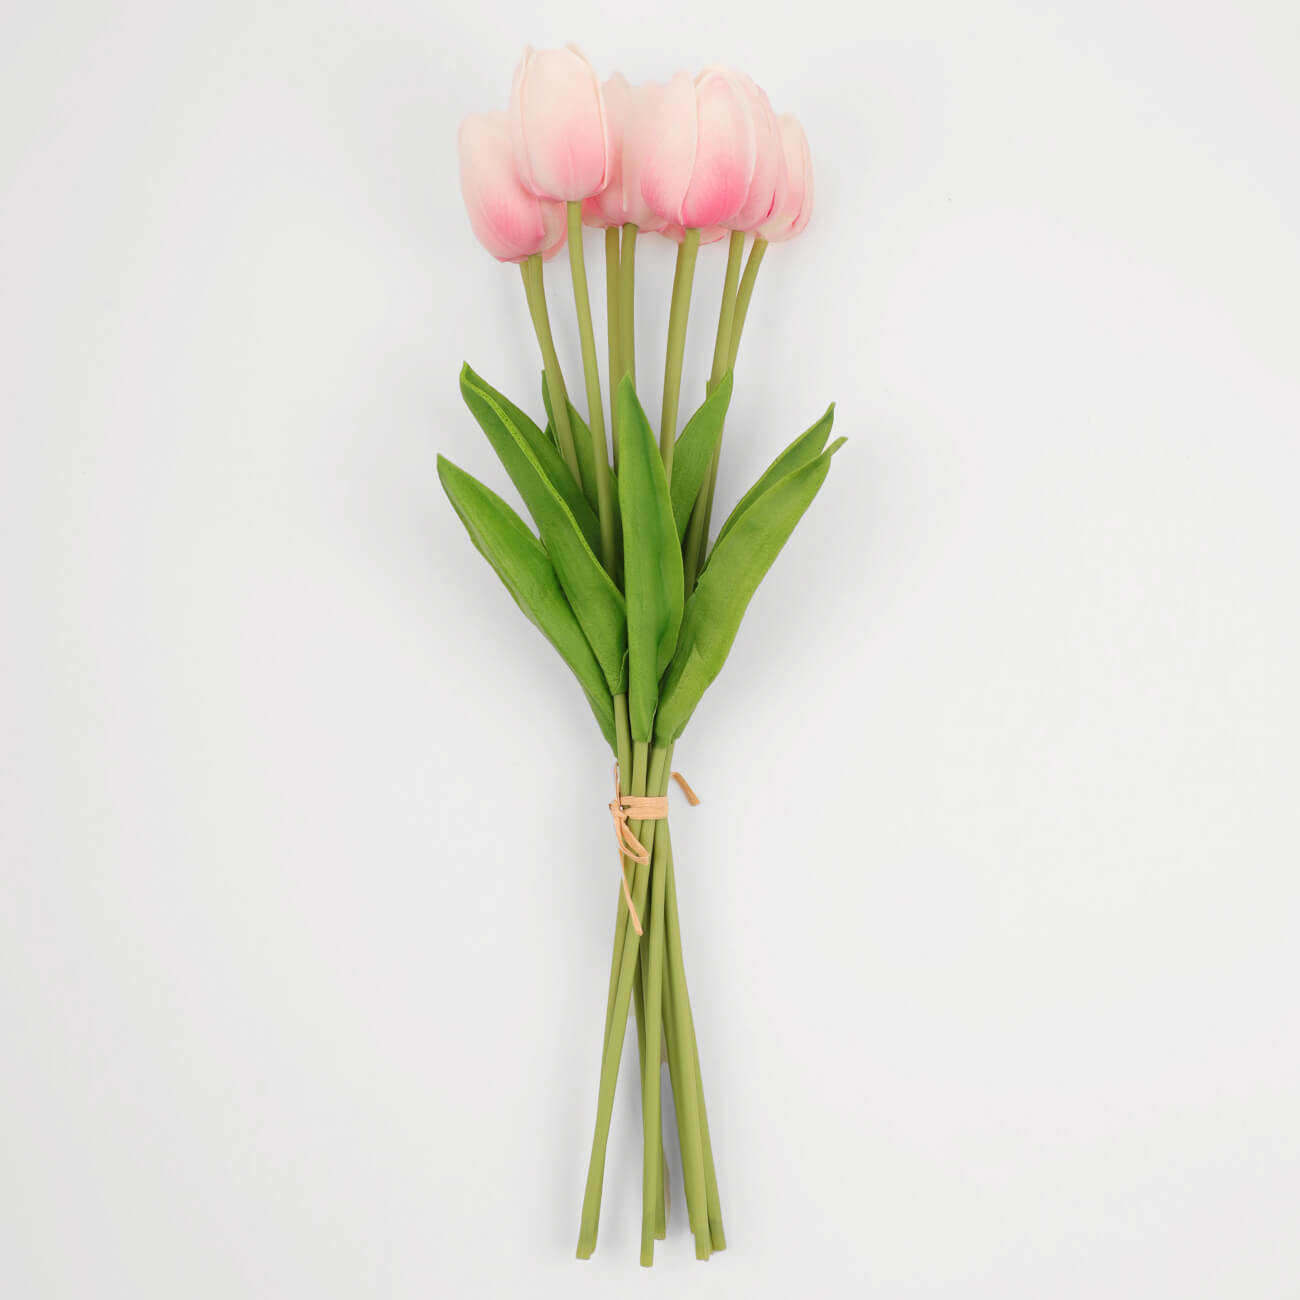 Букет искусственный, 35 см, полиуретан, Розовые тюльпаны, Tulip garden букет тюльпаны 50 см 51 шт